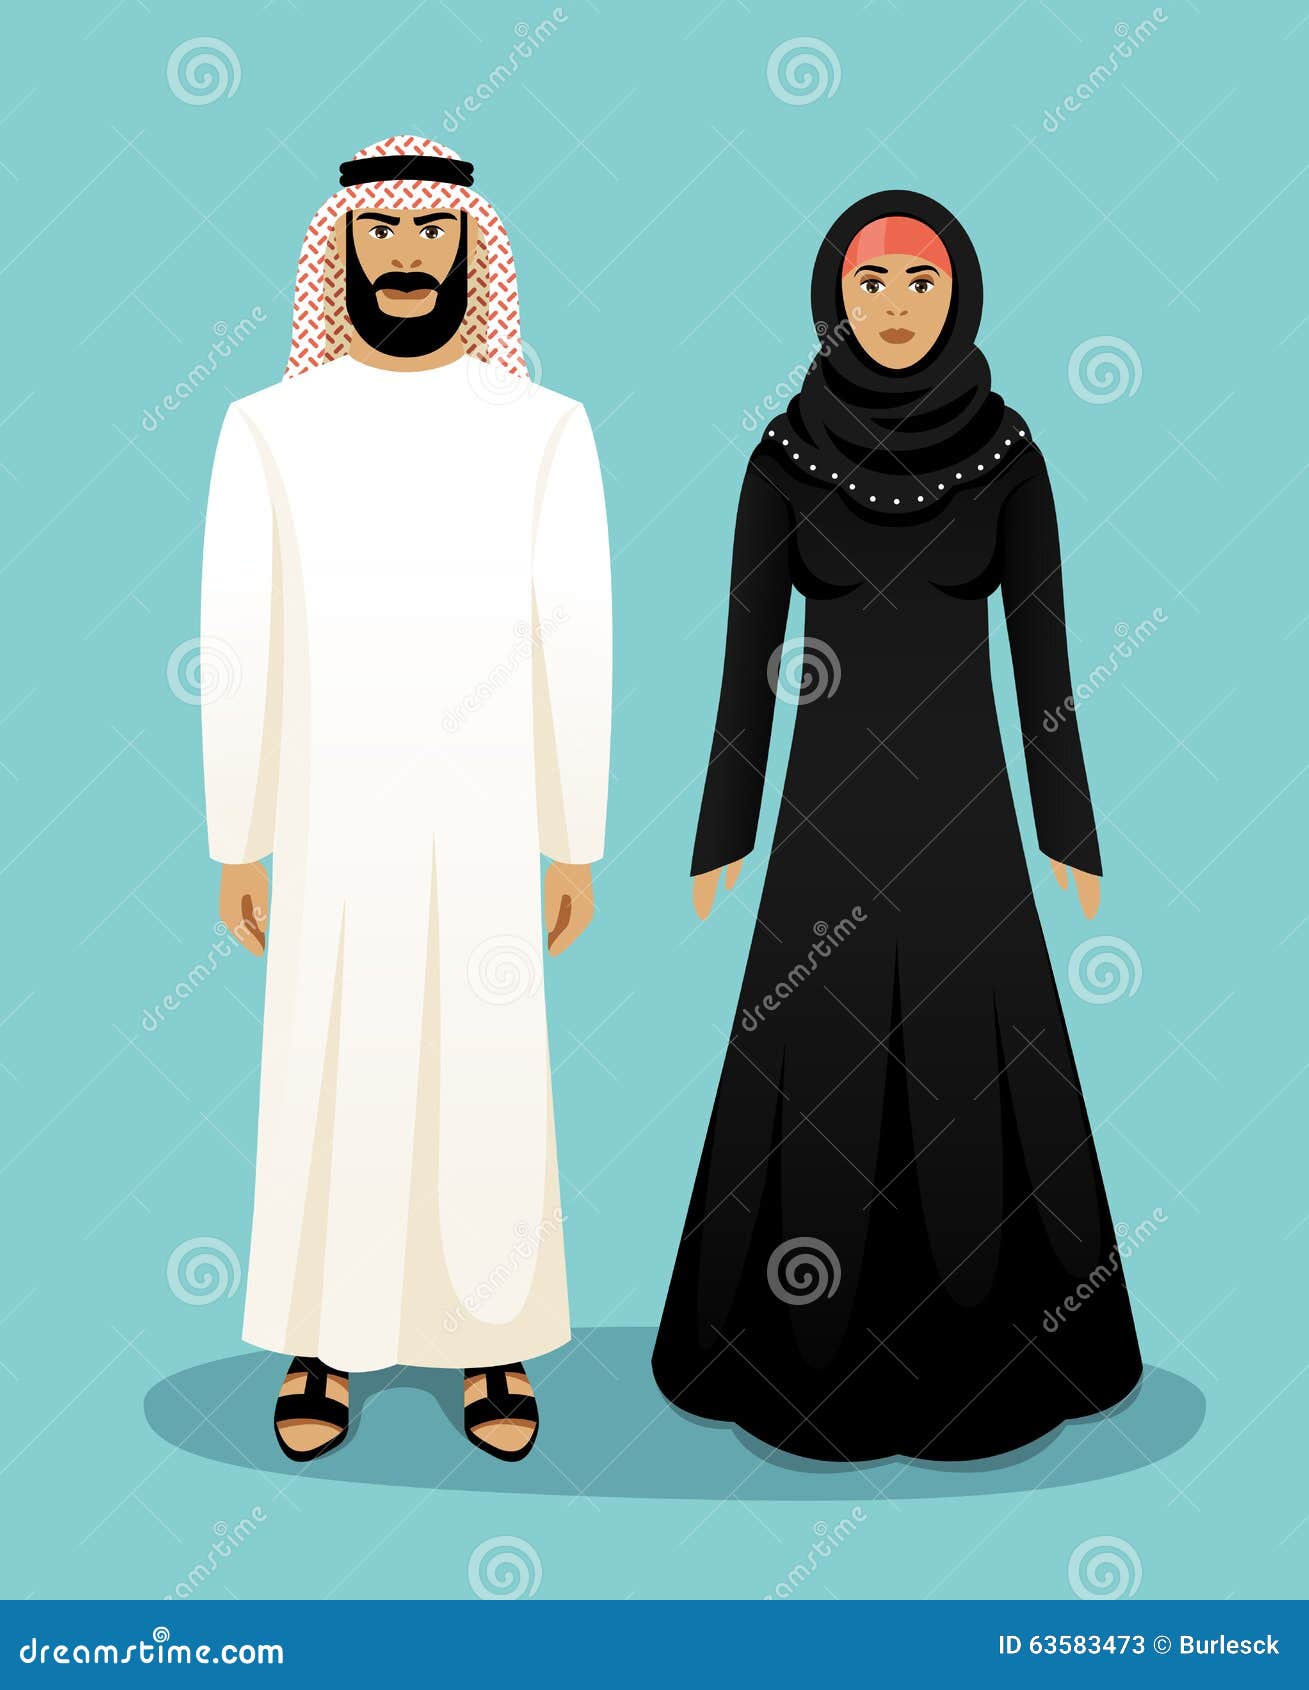 Vestuário Típico Árabe — Muçulmano, by GEOM UFU